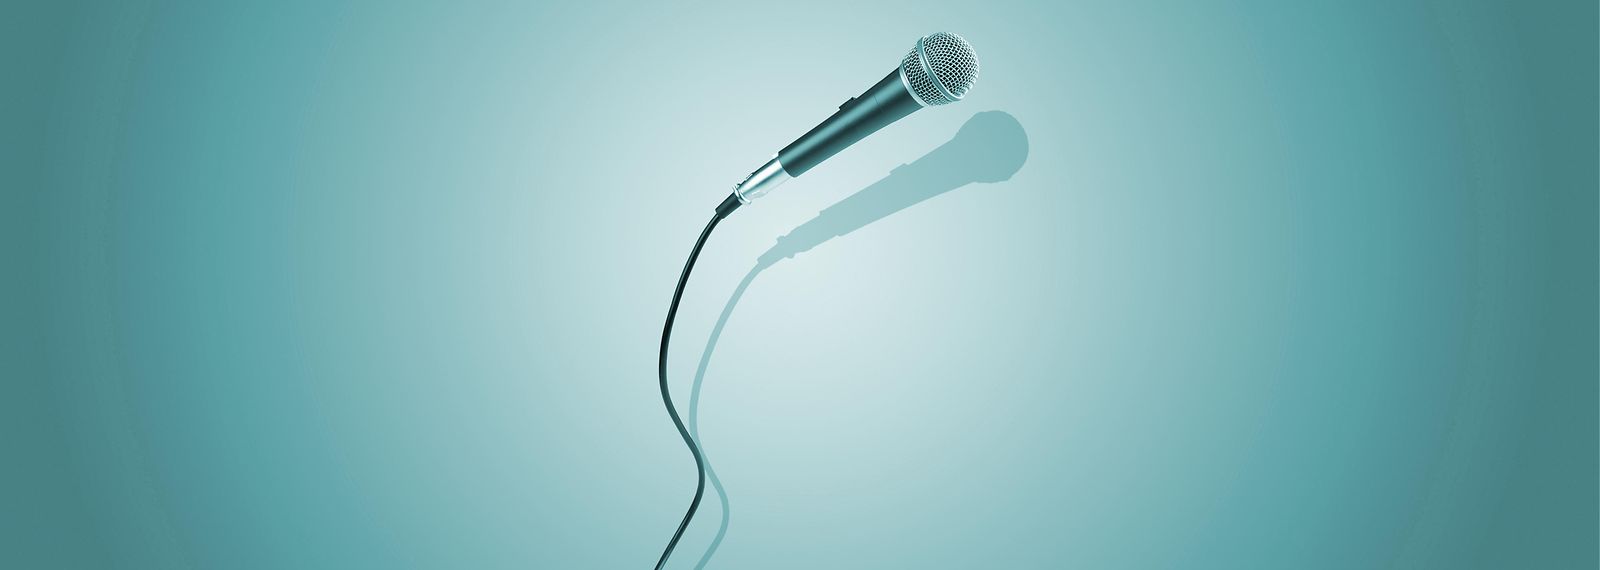 Mikrofon mit Schnur und türkisem Hintergrund